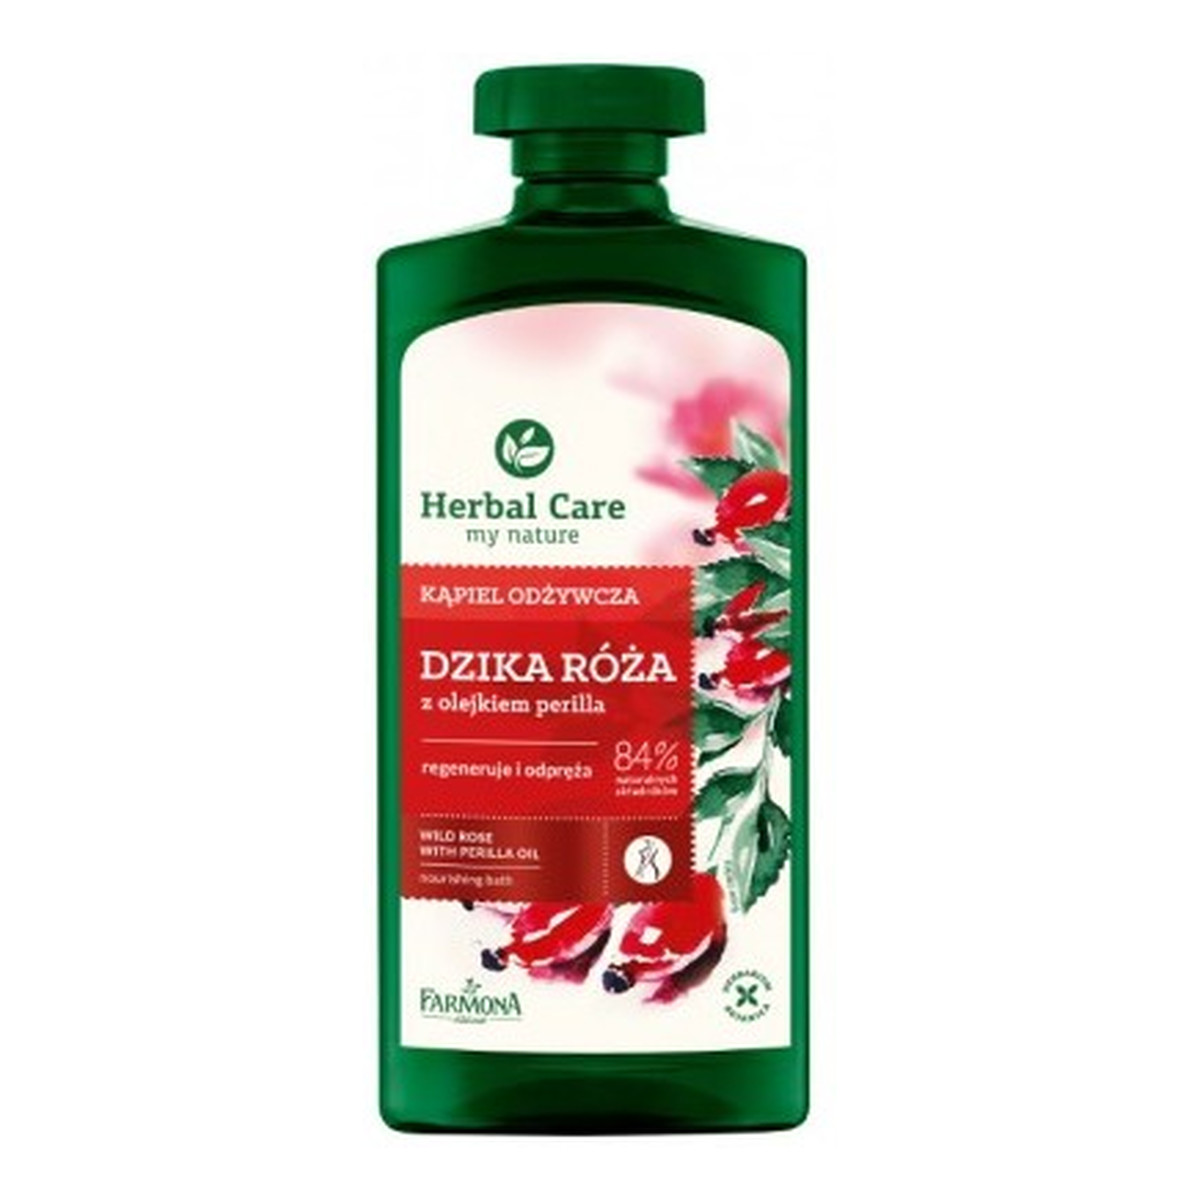 Farmona Herbal Care Kąpiel odżywcza dzika róża z olejkiem perilla 500ml